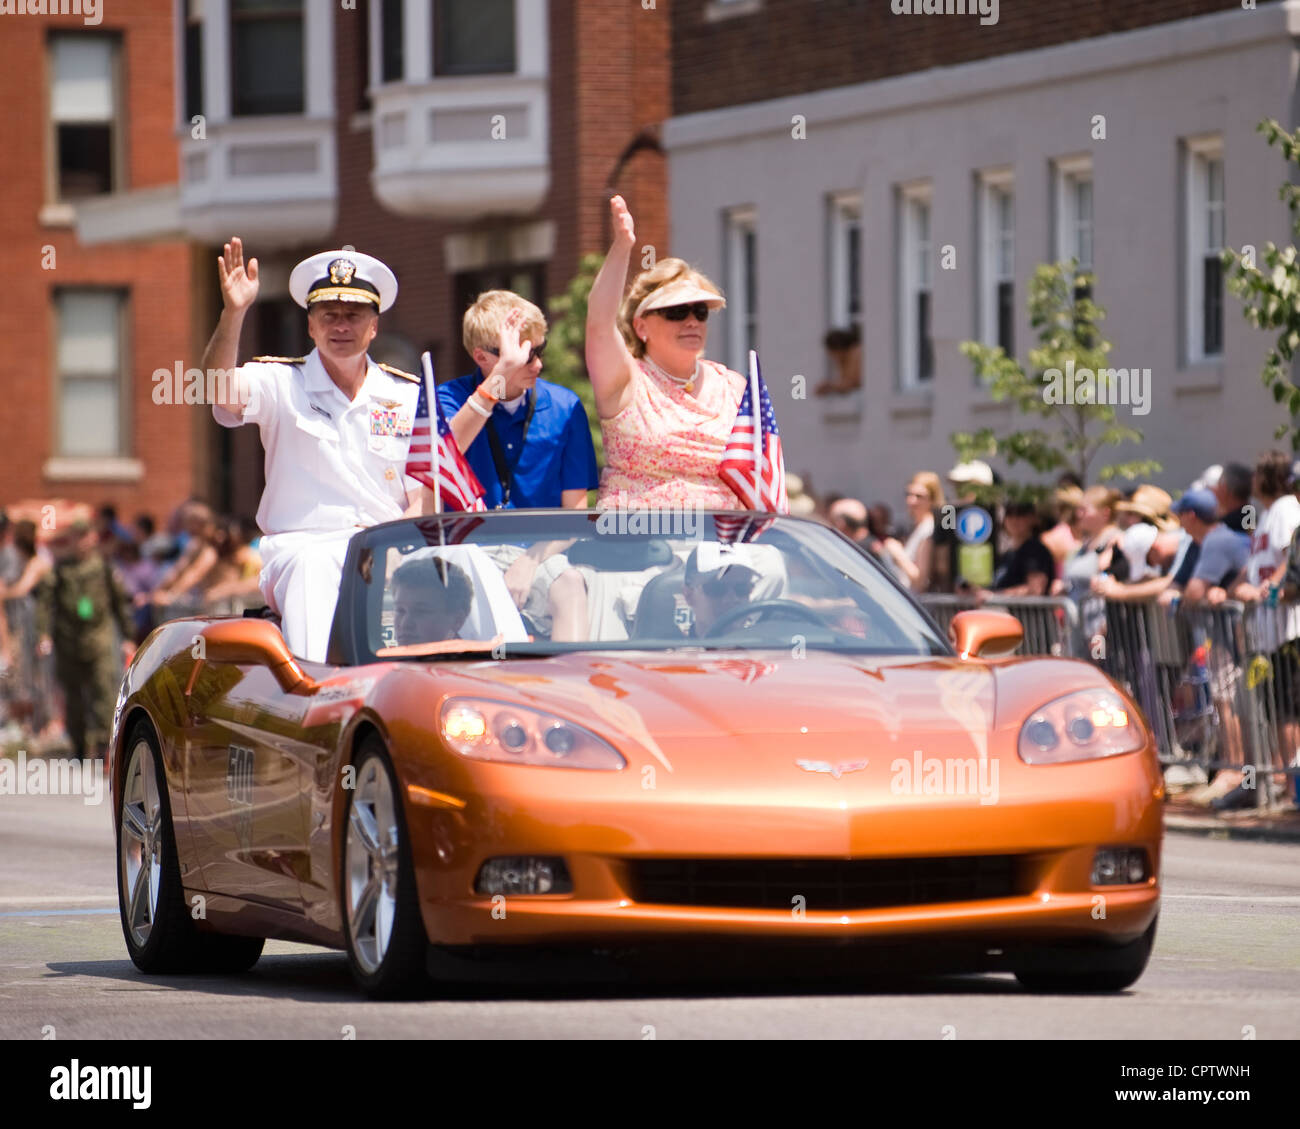 US-Streitkräfte zweithöchster Offizier, stellvertretender Vorsitzender der Joint Chiefs of Staff Navy ADM. James A. Winnefeld Jr. und seine Familie fahren in einer Chevrolet Corvette, offizieller Indy 500 Pace-Wagen durch die Festival Parade 500, Samstag, 26. Mai 2012. Stockfoto